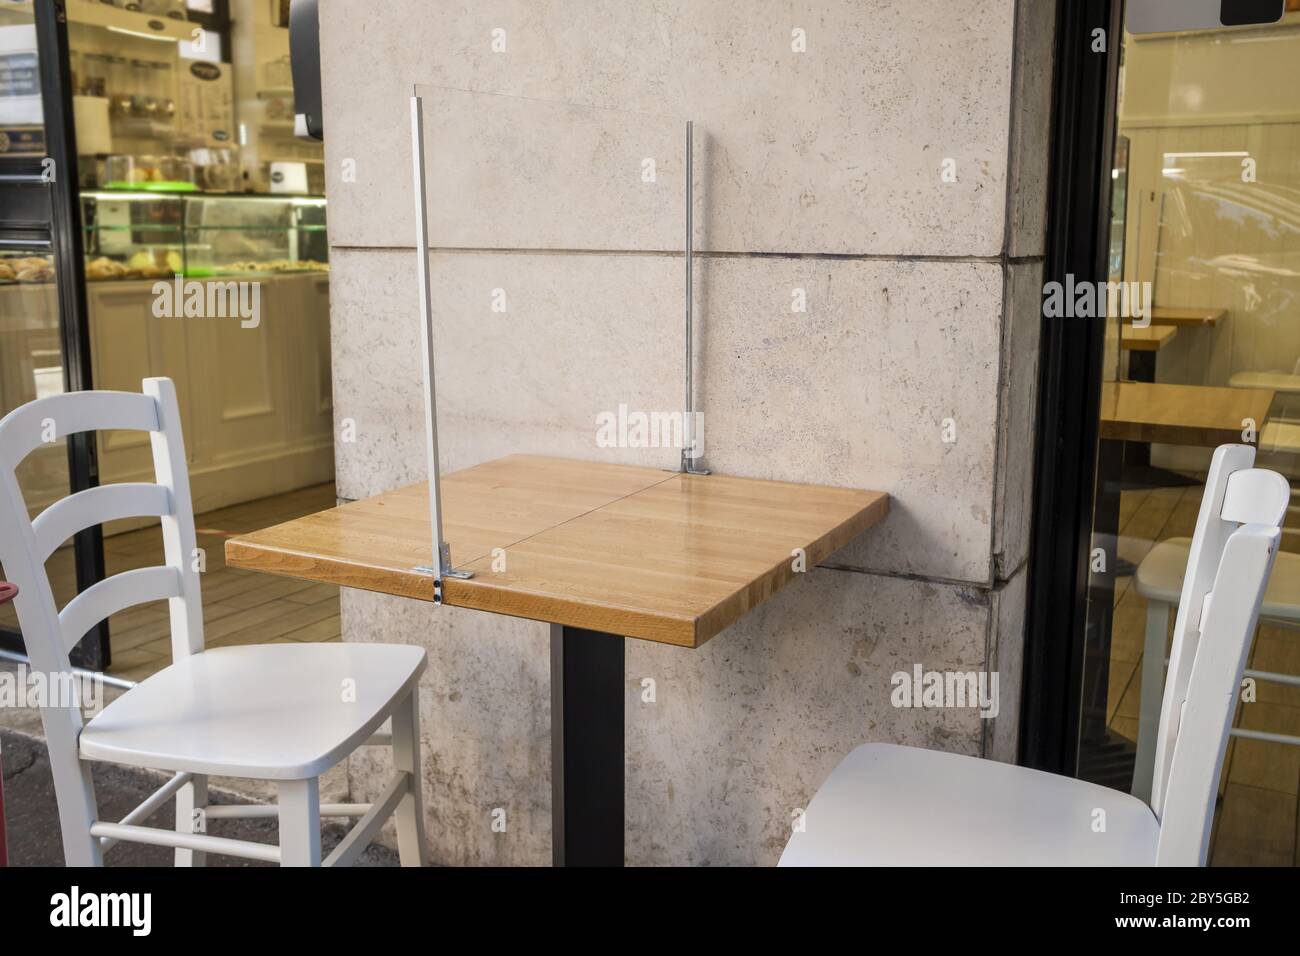 Barriera in plastica da tavolo come nuova misura contro la pandemia del Covid 19 in un caffè italiano all'aperto Foto Stock